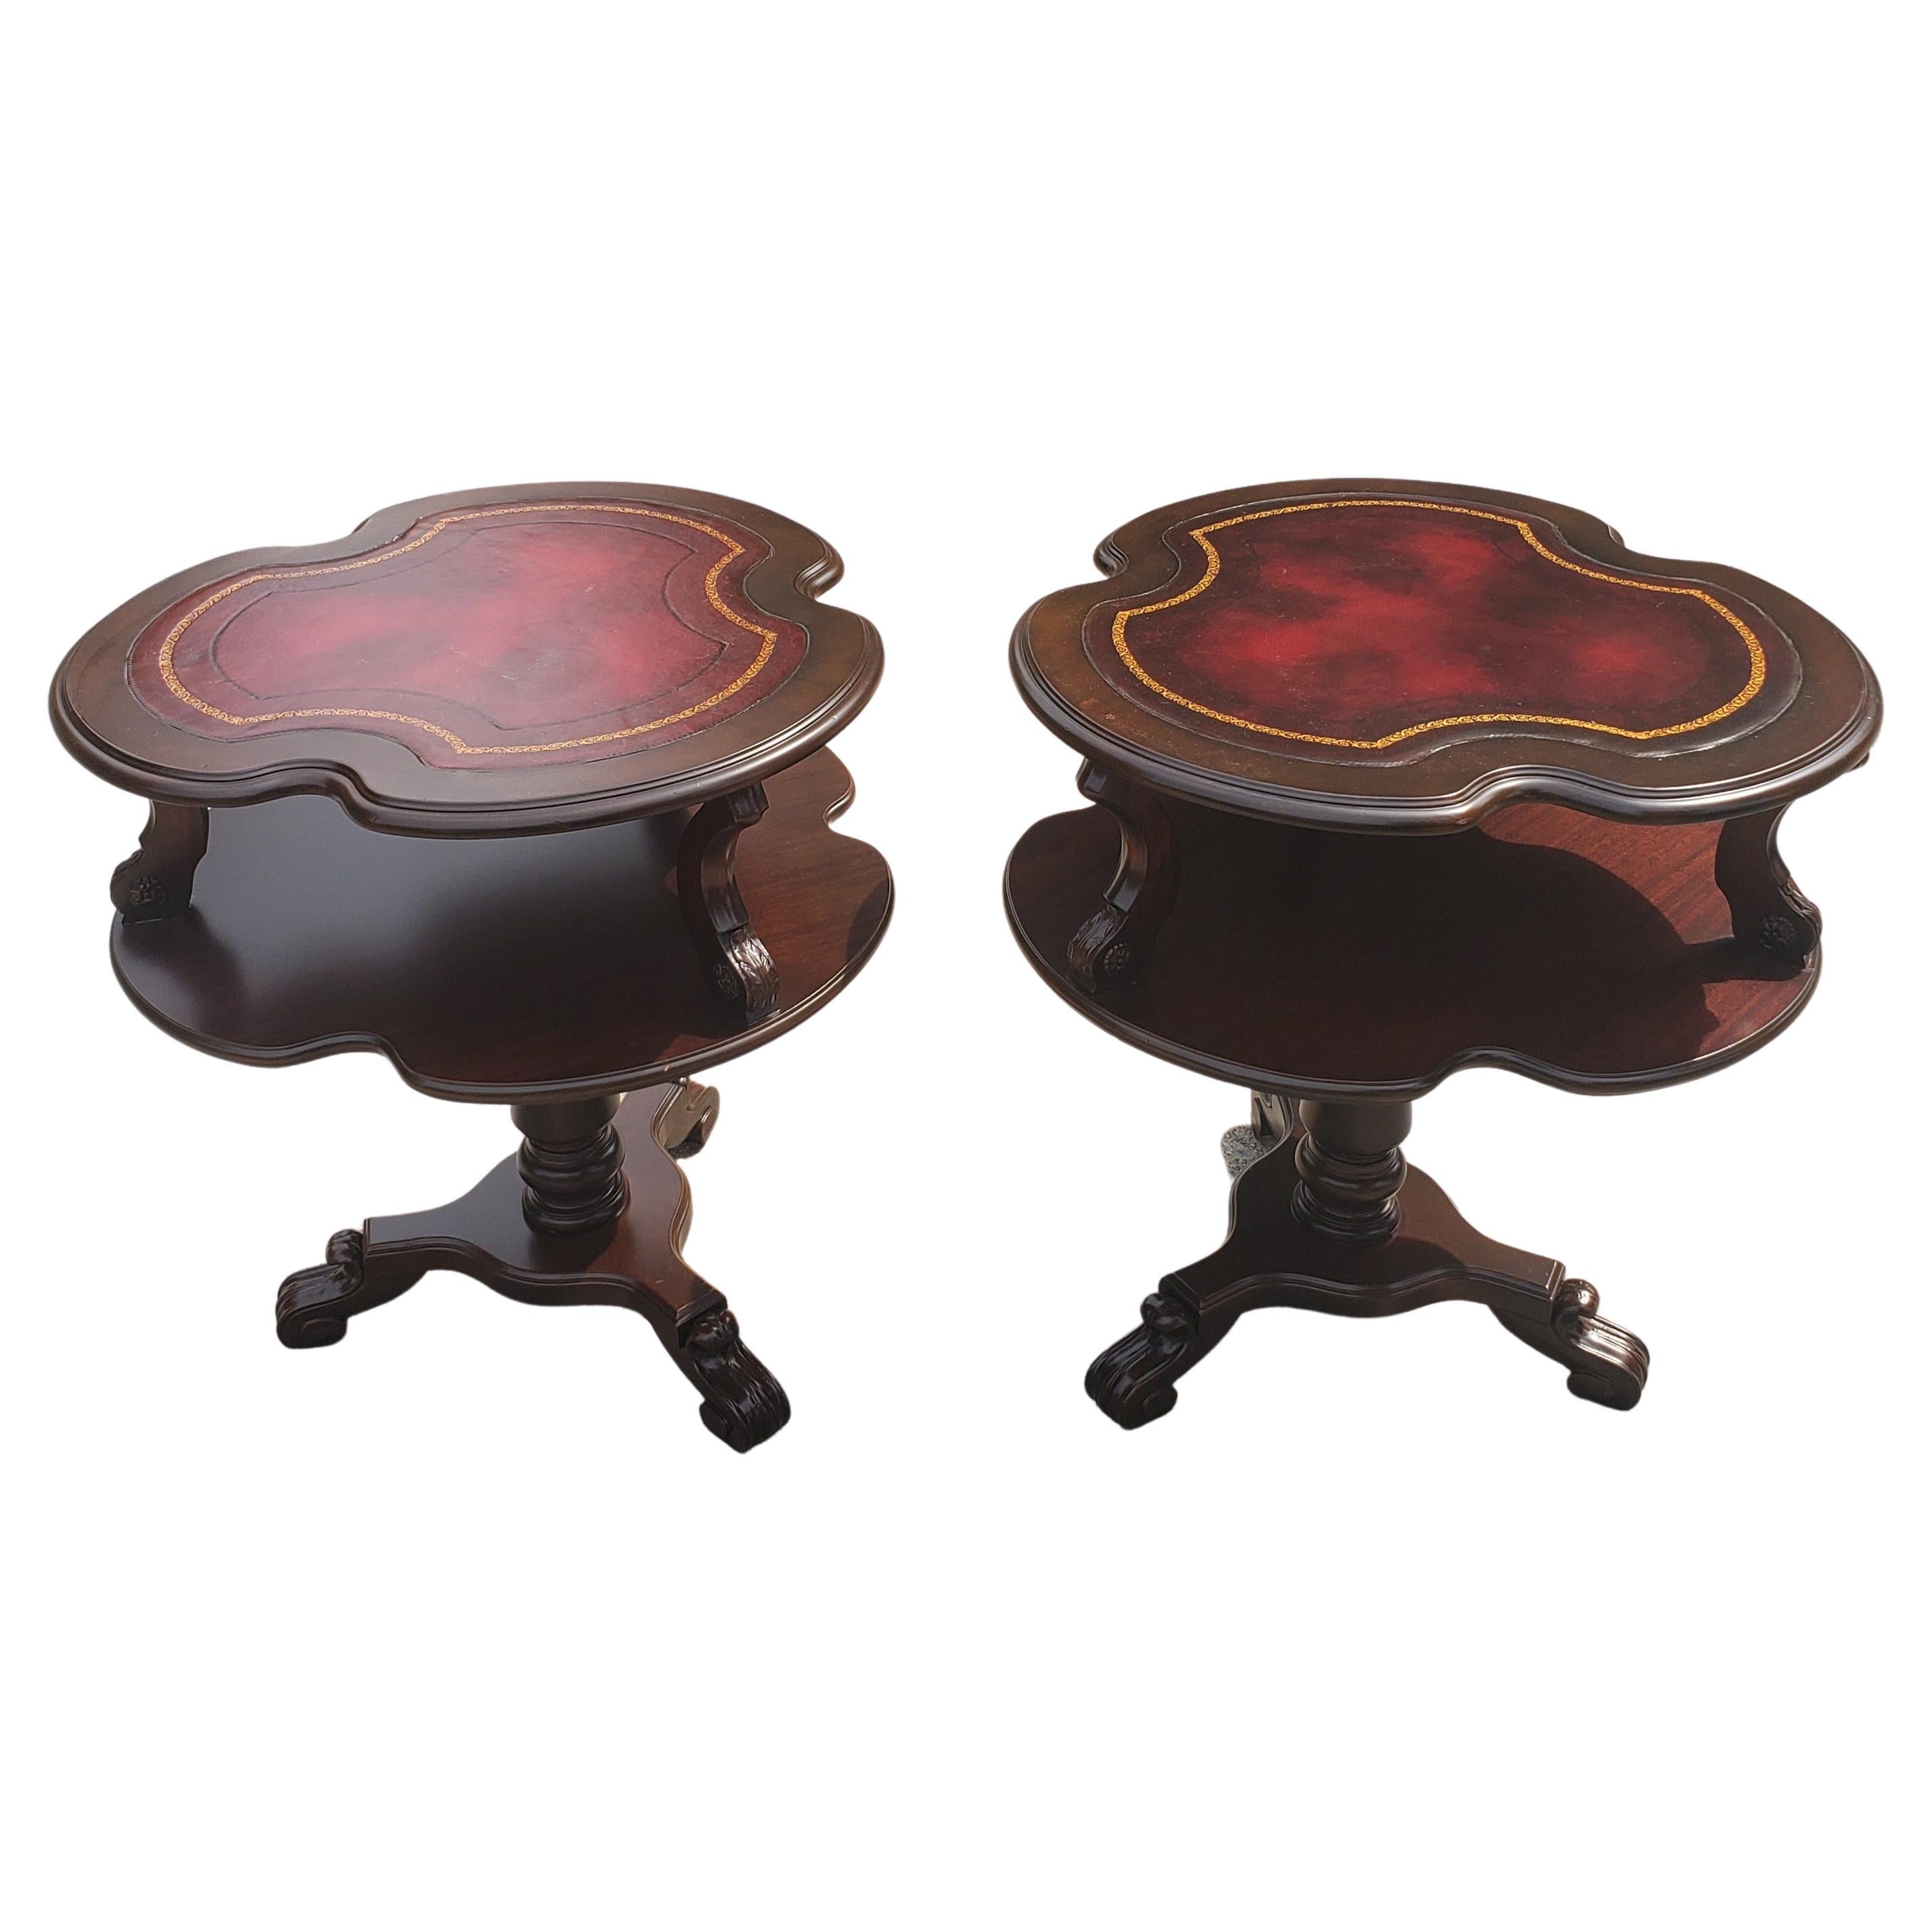 Paire de tables d'appoint anglaises Regency restaurées à 2 niveaux avec inserts en cuir et poignées, style Stenciled